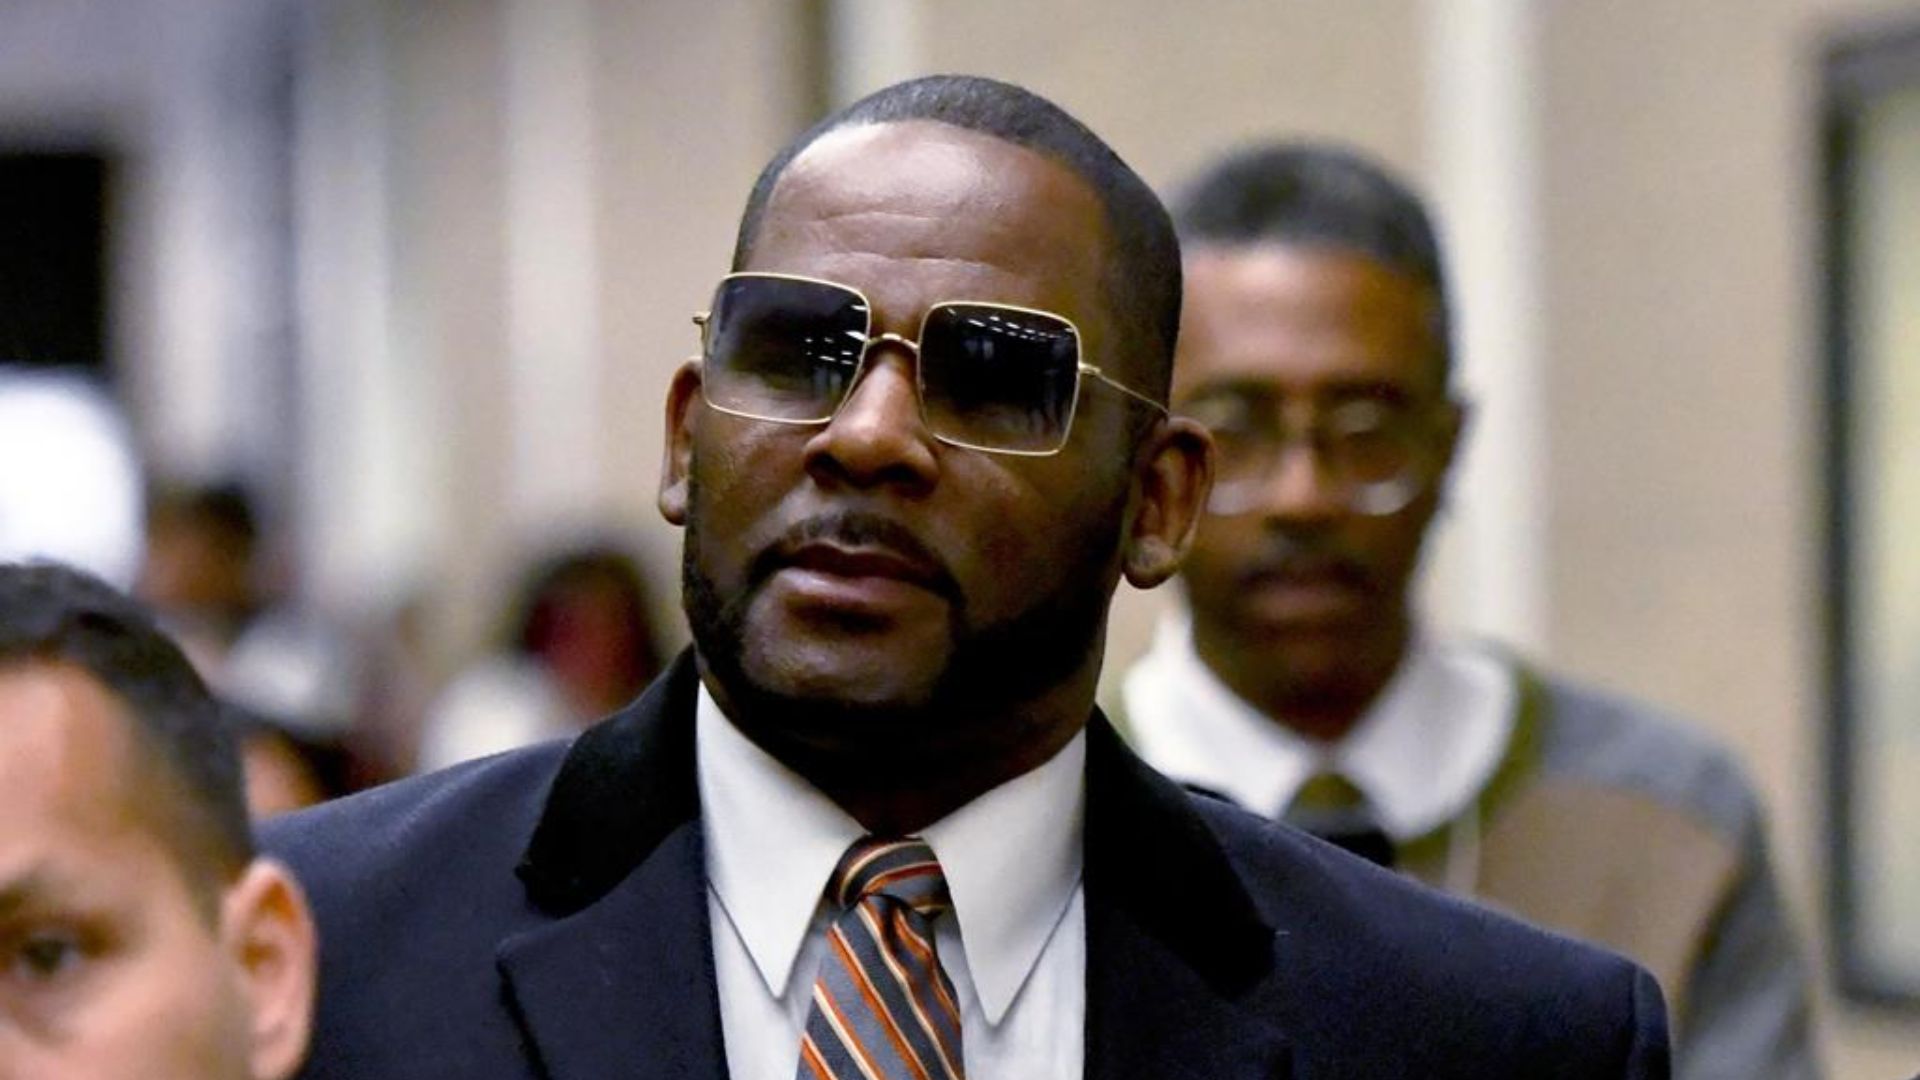 Le chanteur R. Kelly a été condamné à juste titre à 20 ans de prison pour des crimes sexuels sur des enfants.